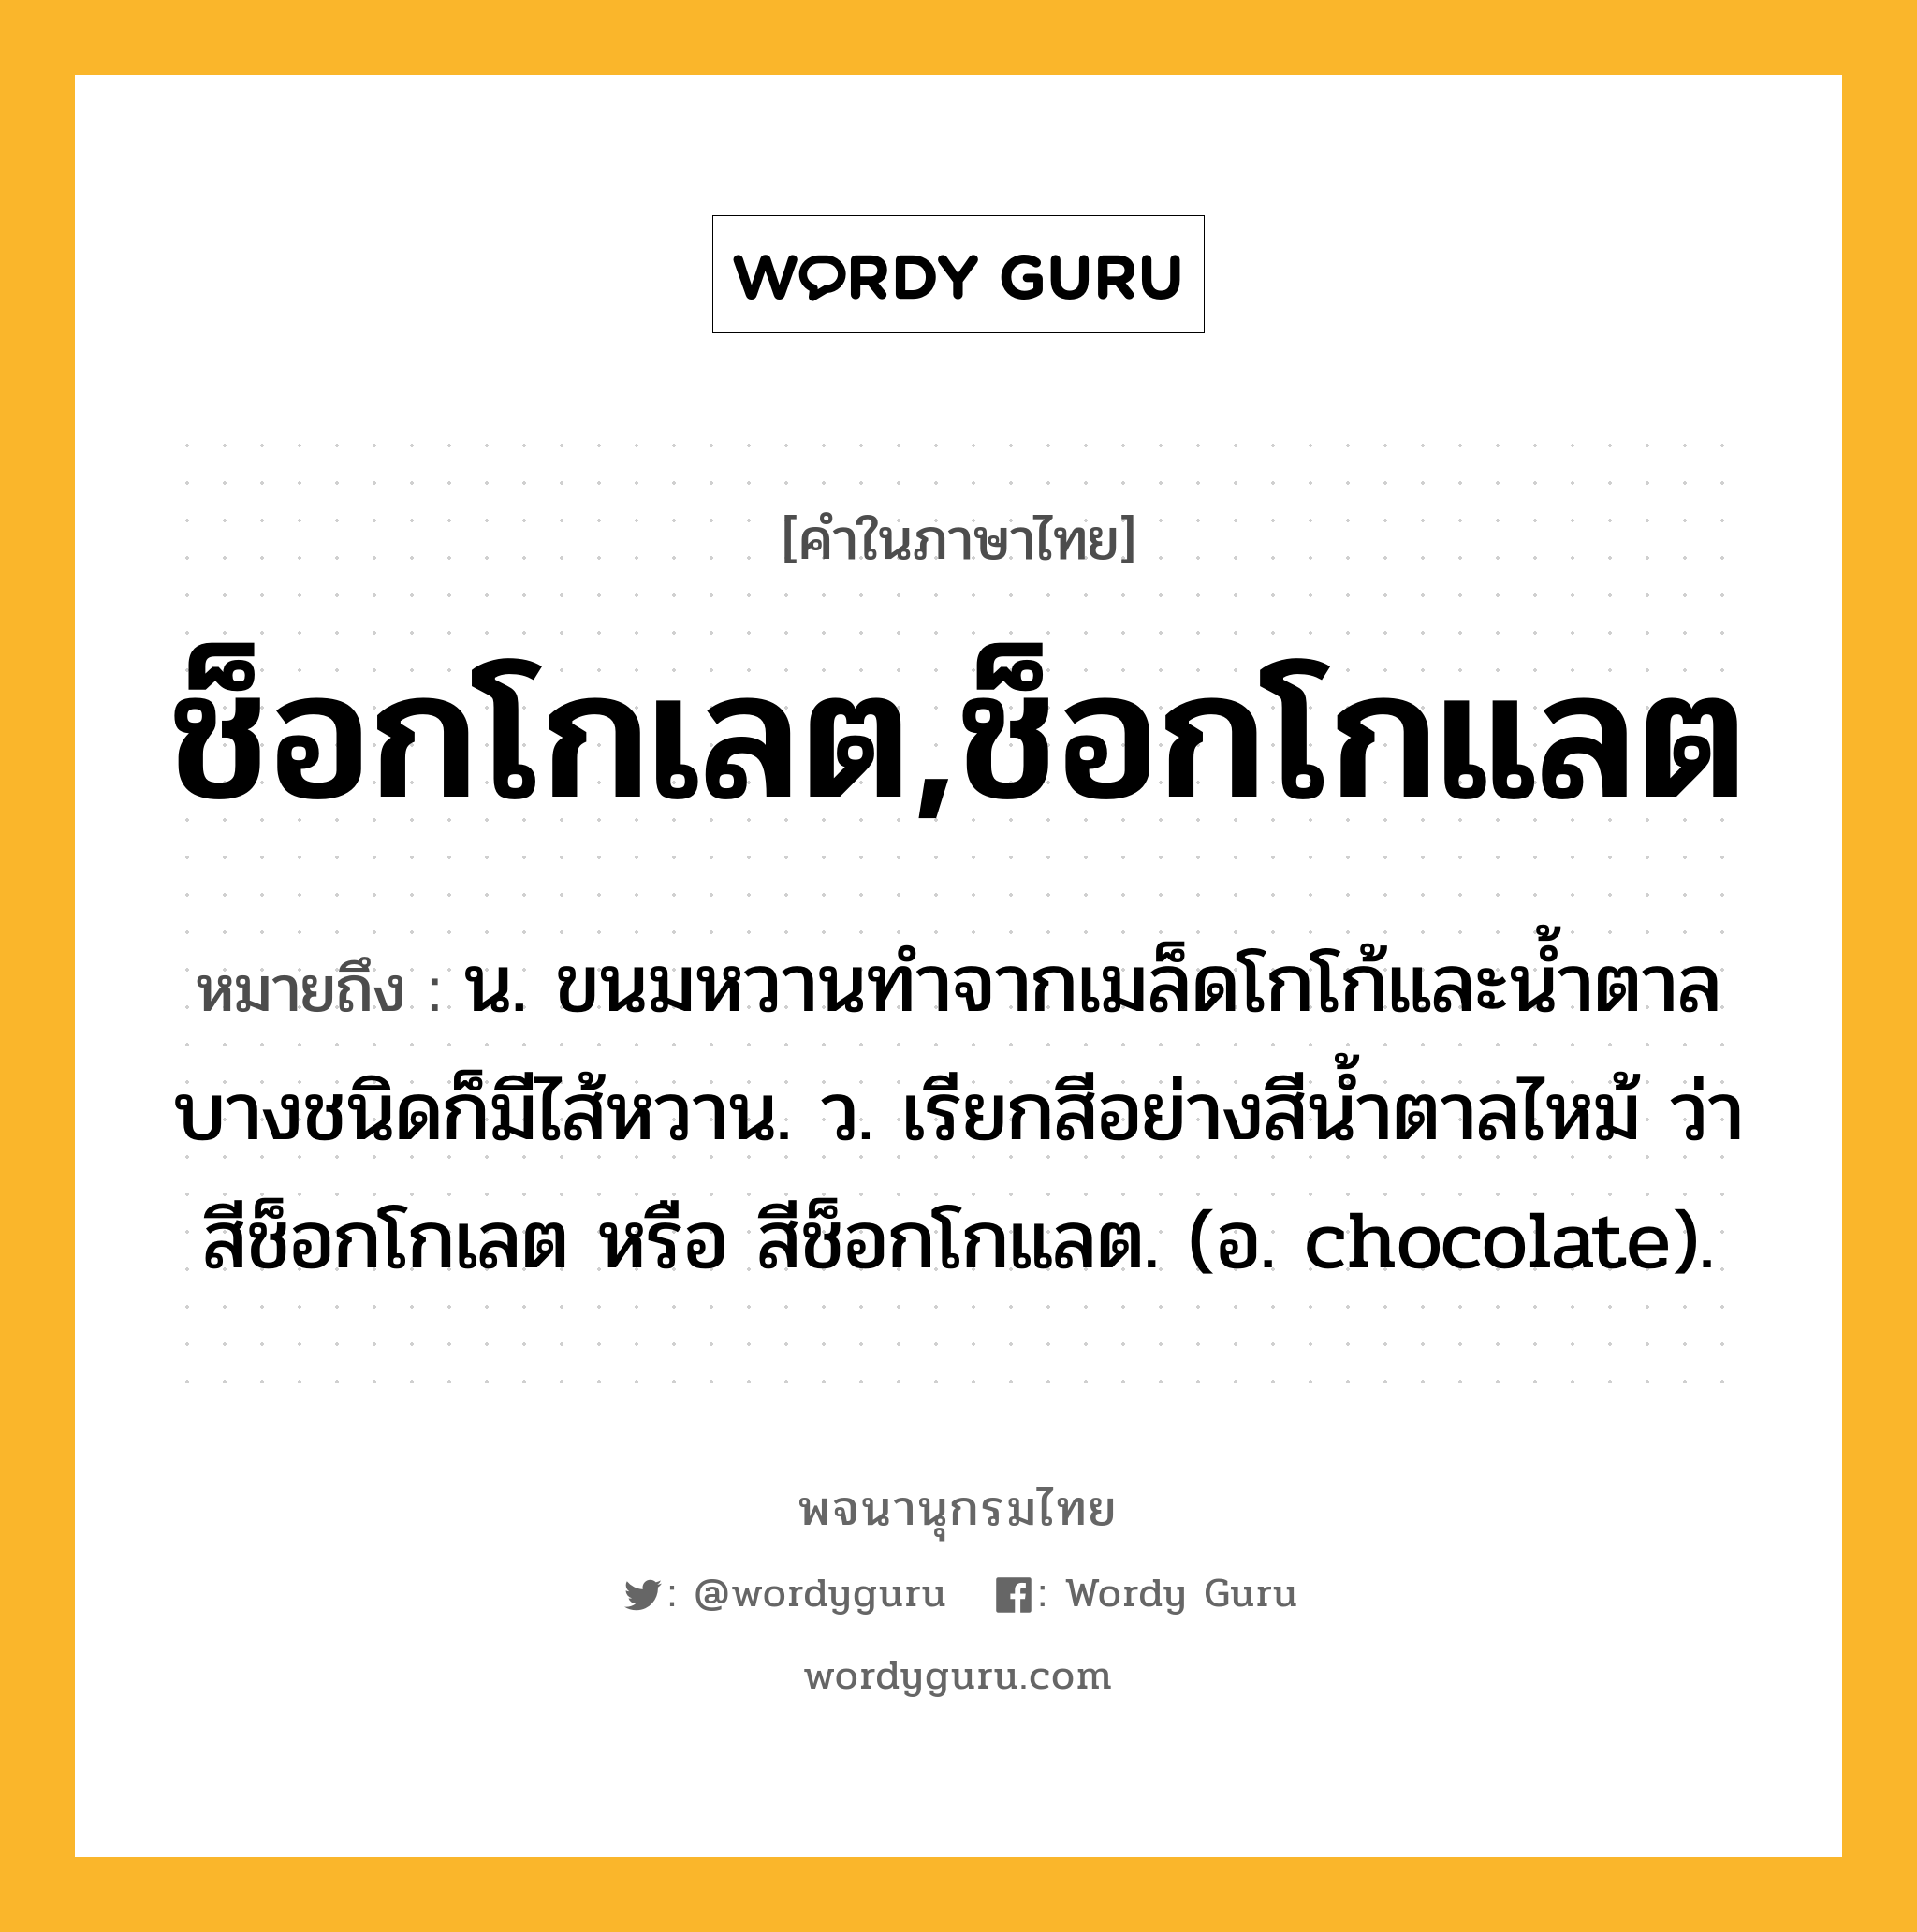 ช็อกโกเลต,ช็อกโกแลต ความหมาย หมายถึงอะไร?, คำในภาษาไทย ช็อกโกเลต,ช็อกโกแลต หมายถึง น. ขนมหวานทําจากเมล็ดโกโก้และนํ้าตาล บางชนิดก็มีไส้หวาน. ว. เรียกสีอย่างสีนํ้าตาลไหม้ ว่า สีช็อกโกเลต หรือ สีช็อกโกแลต. (อ. chocolate).